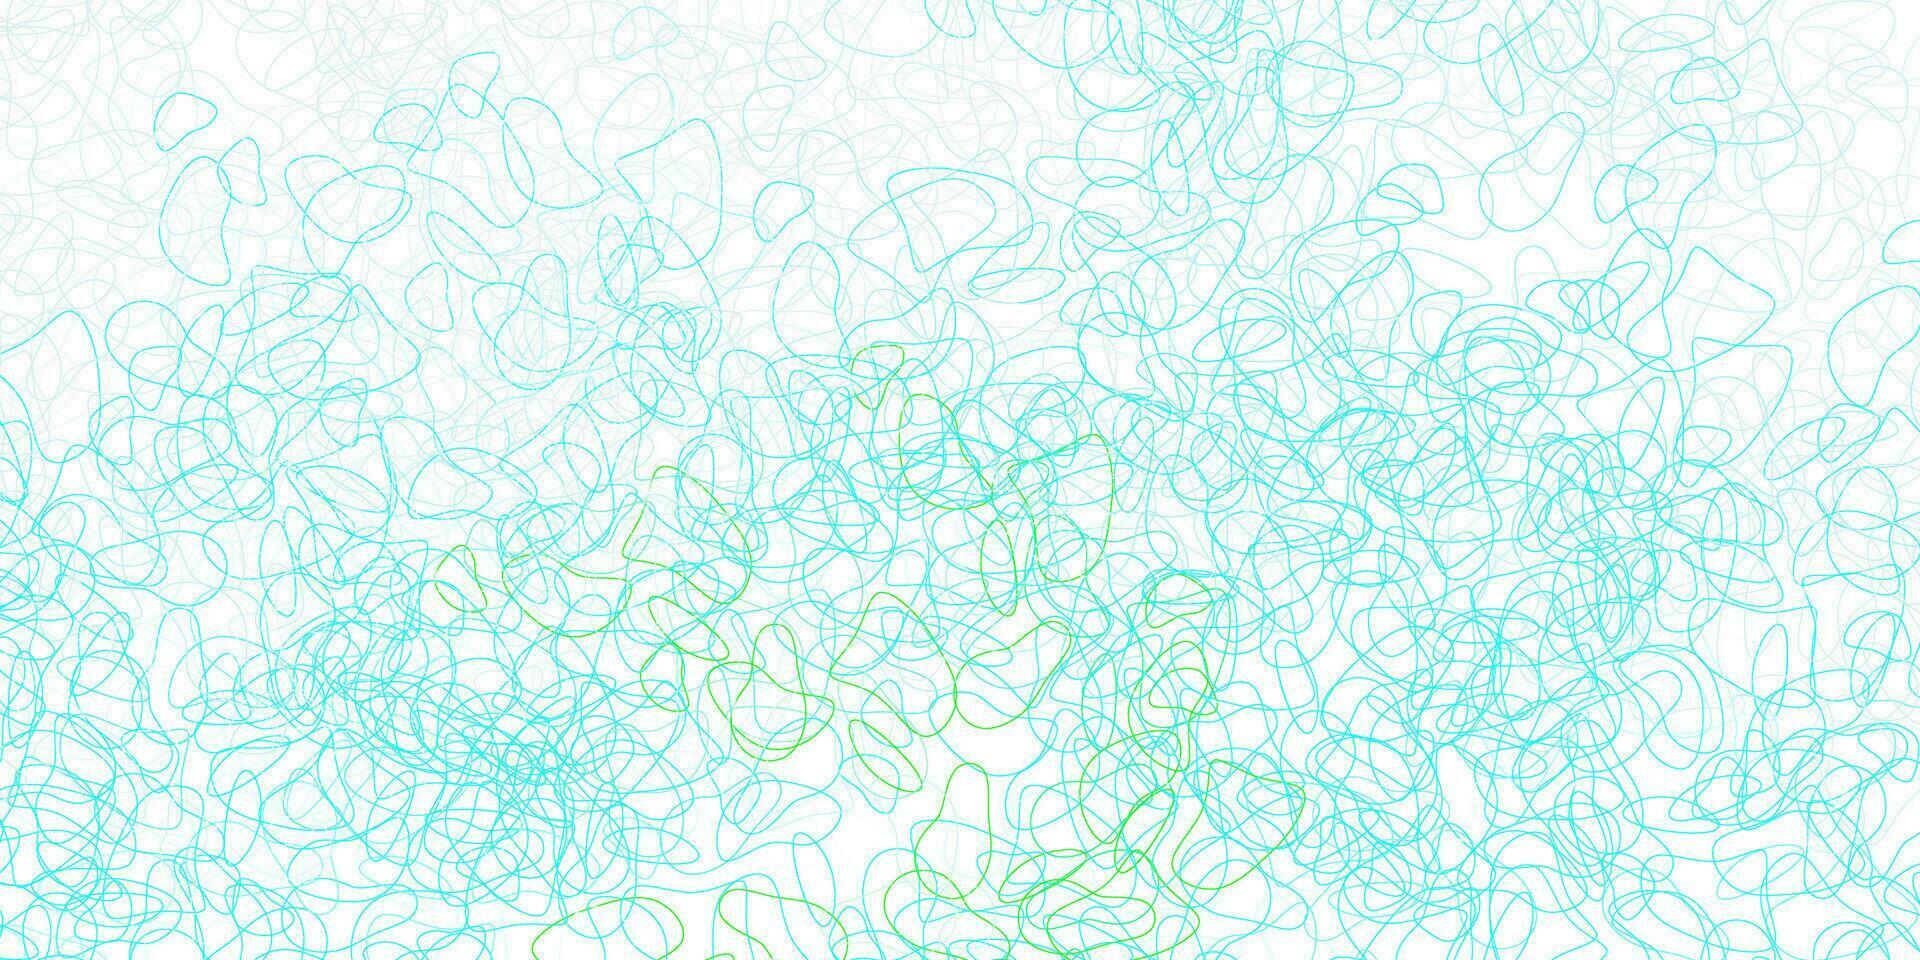 hellblaues, grünes Vektormuster mit abstrakten Formen. vektor